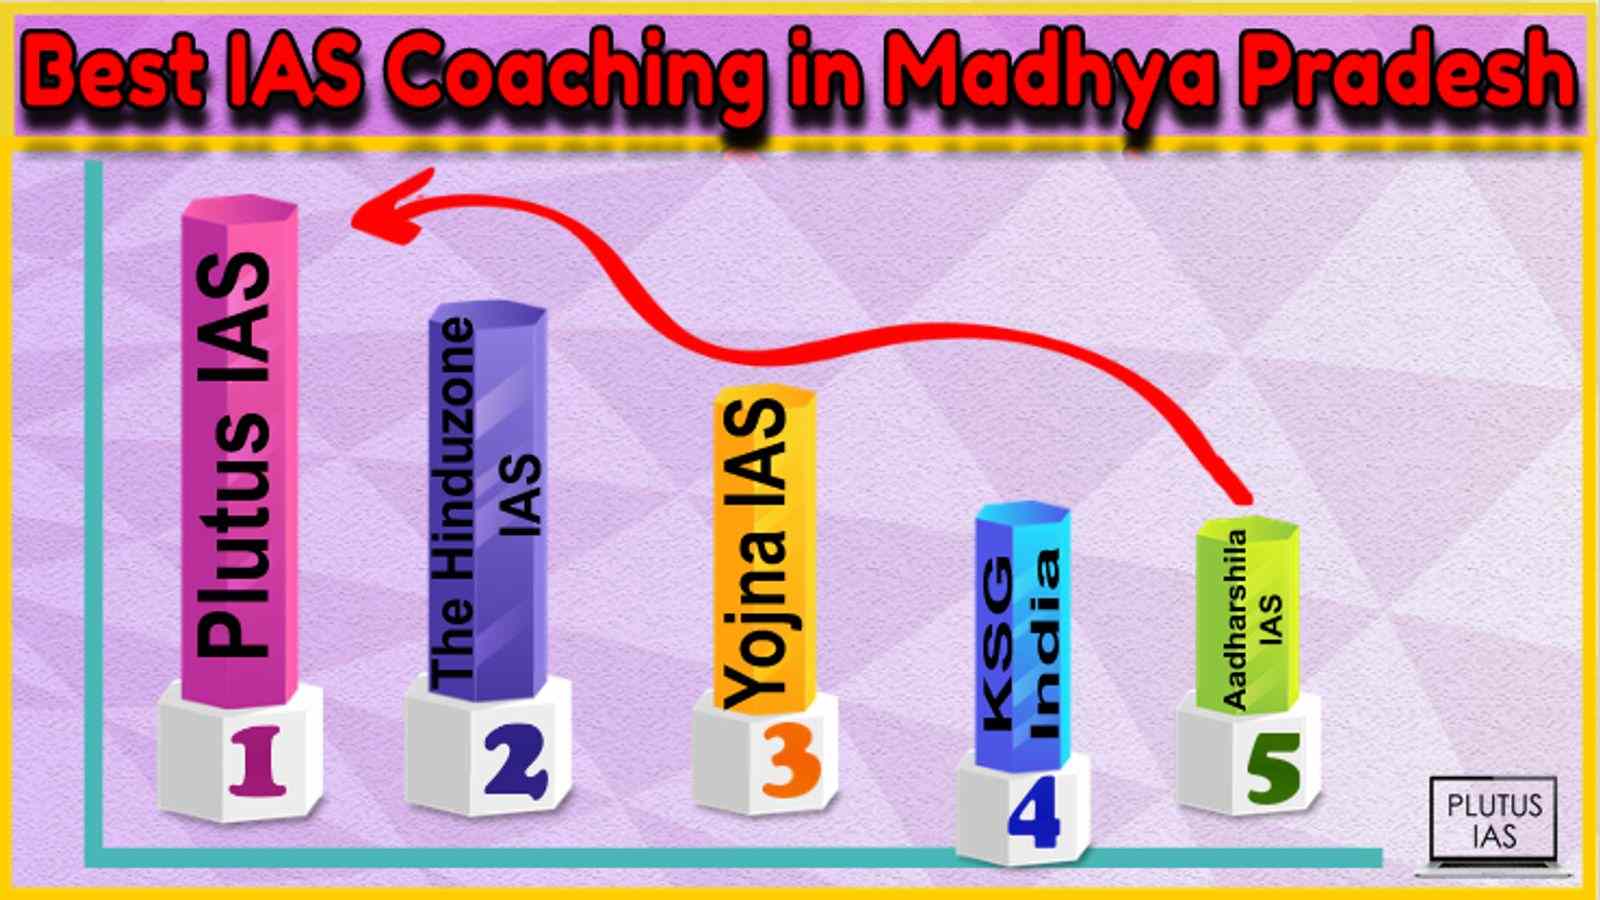 Best IAS Coaching in Madhya Pradesh